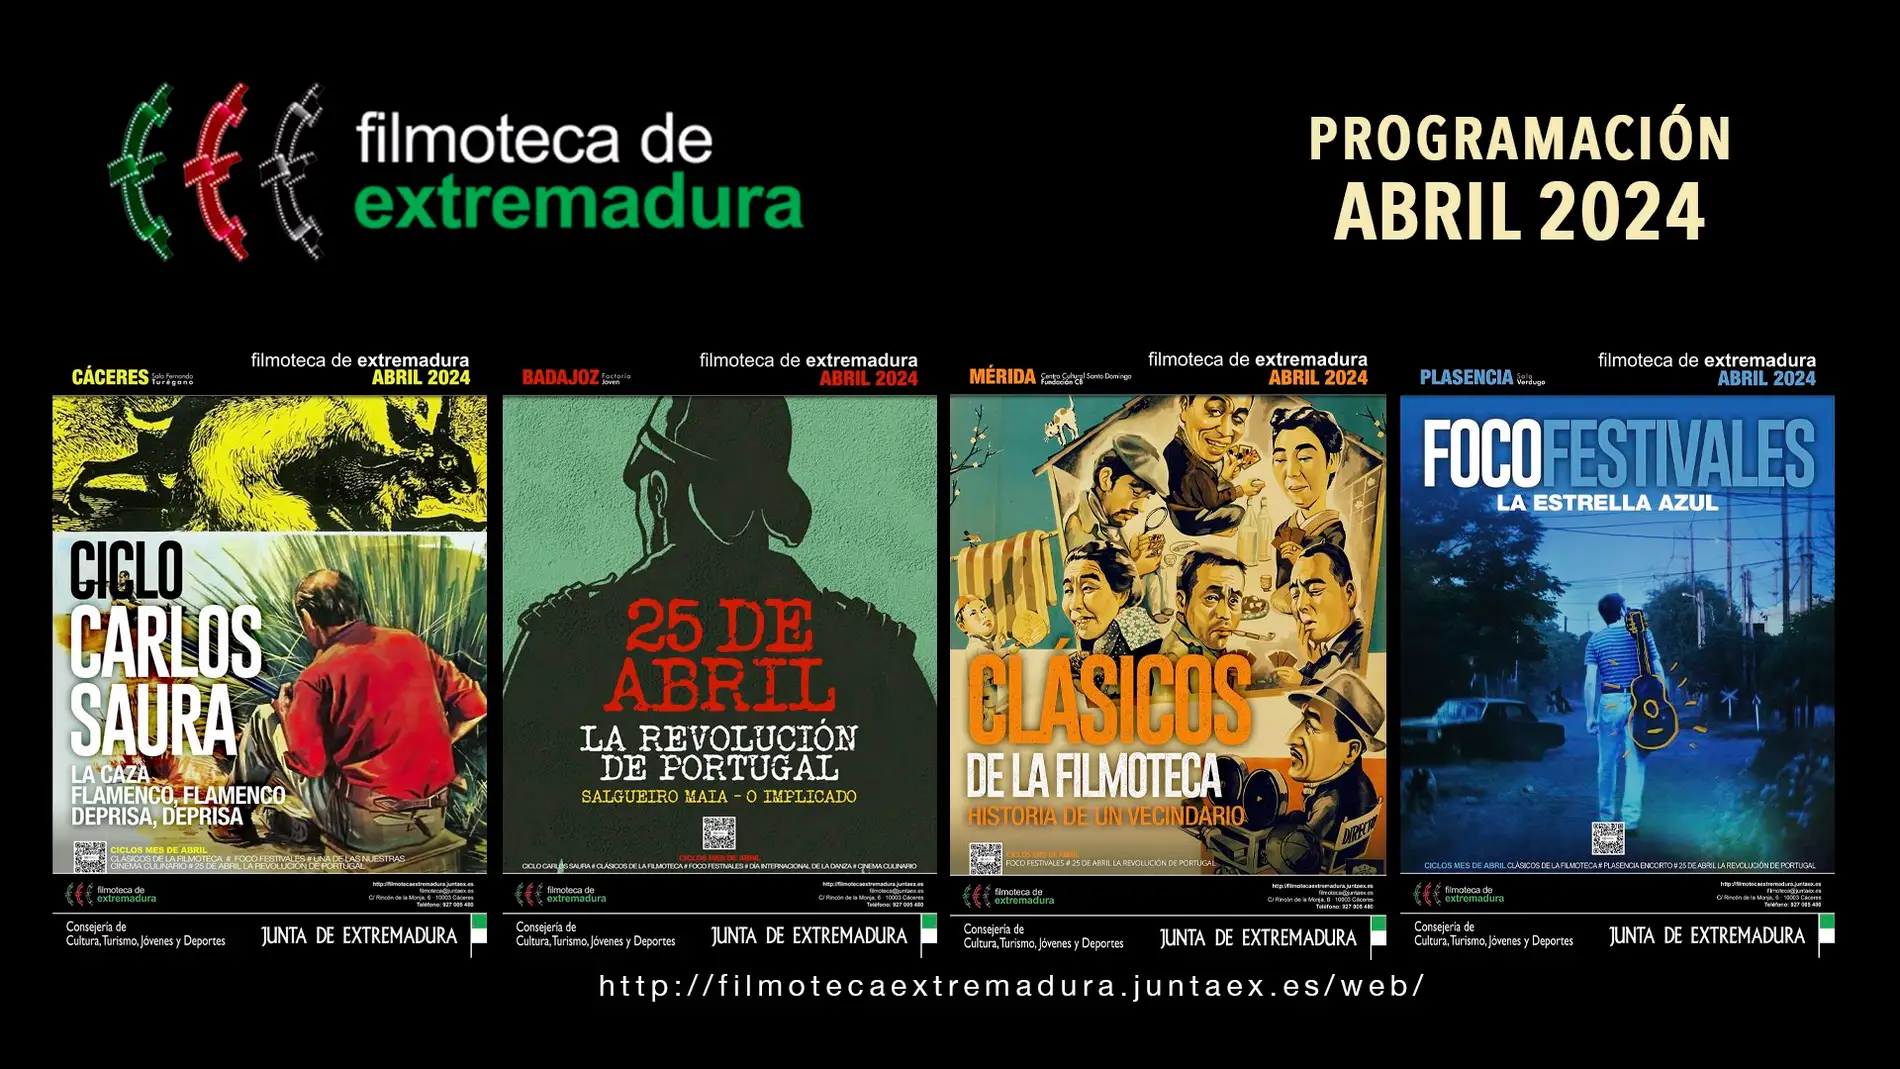 La Revolución de los Claveles, Saura y la Gastronomía protagonistas de la programación de la Filmoteca de Extremadura en abril